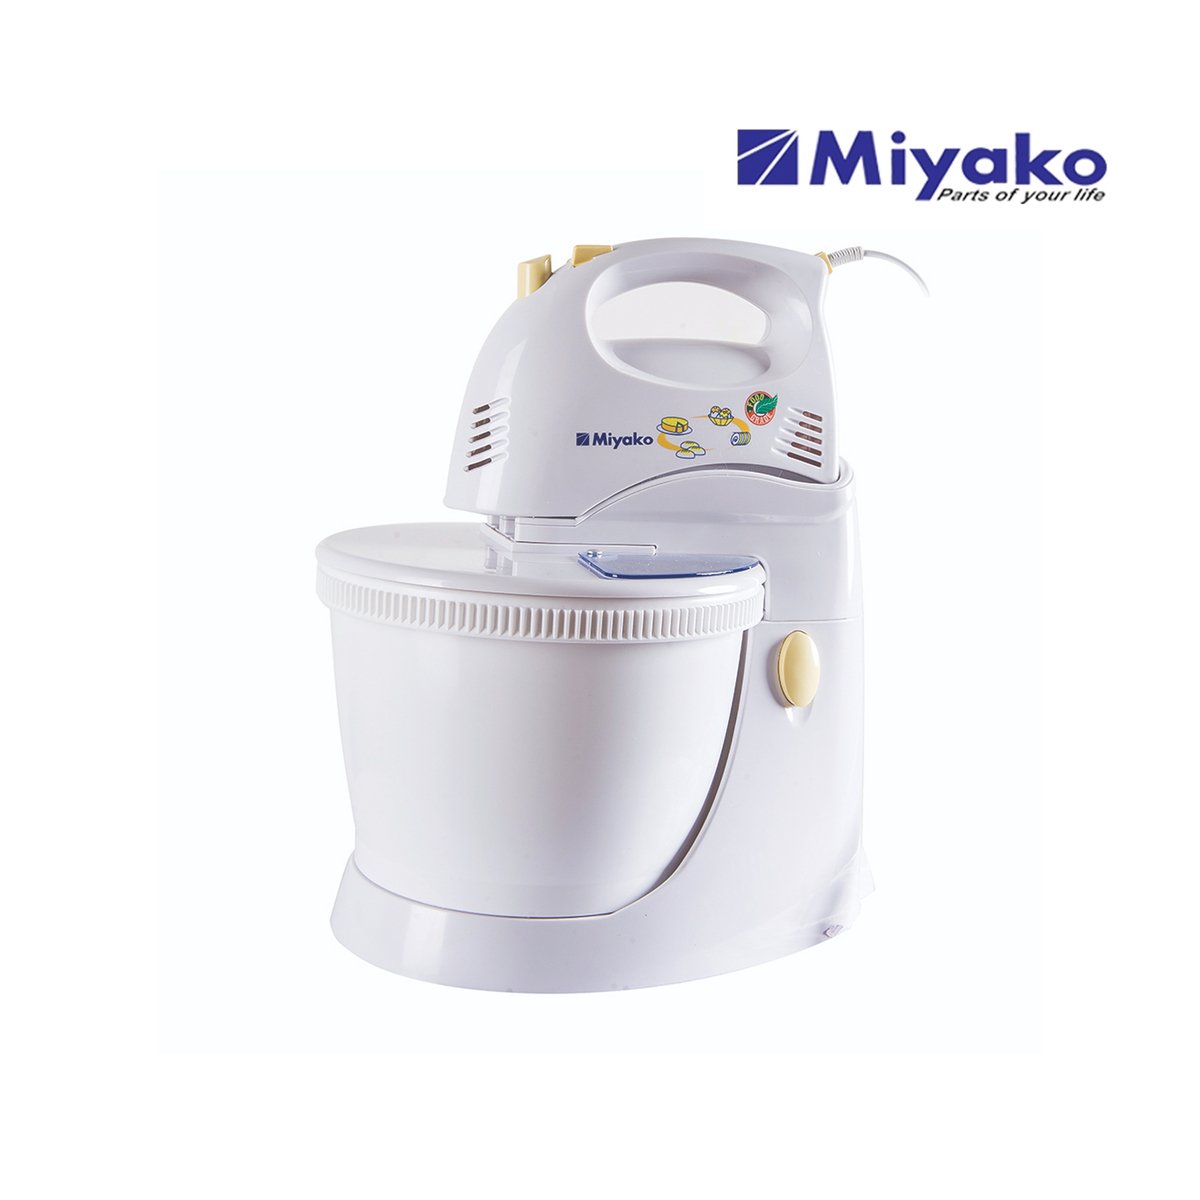 Miyako Stand Mixer SM-625